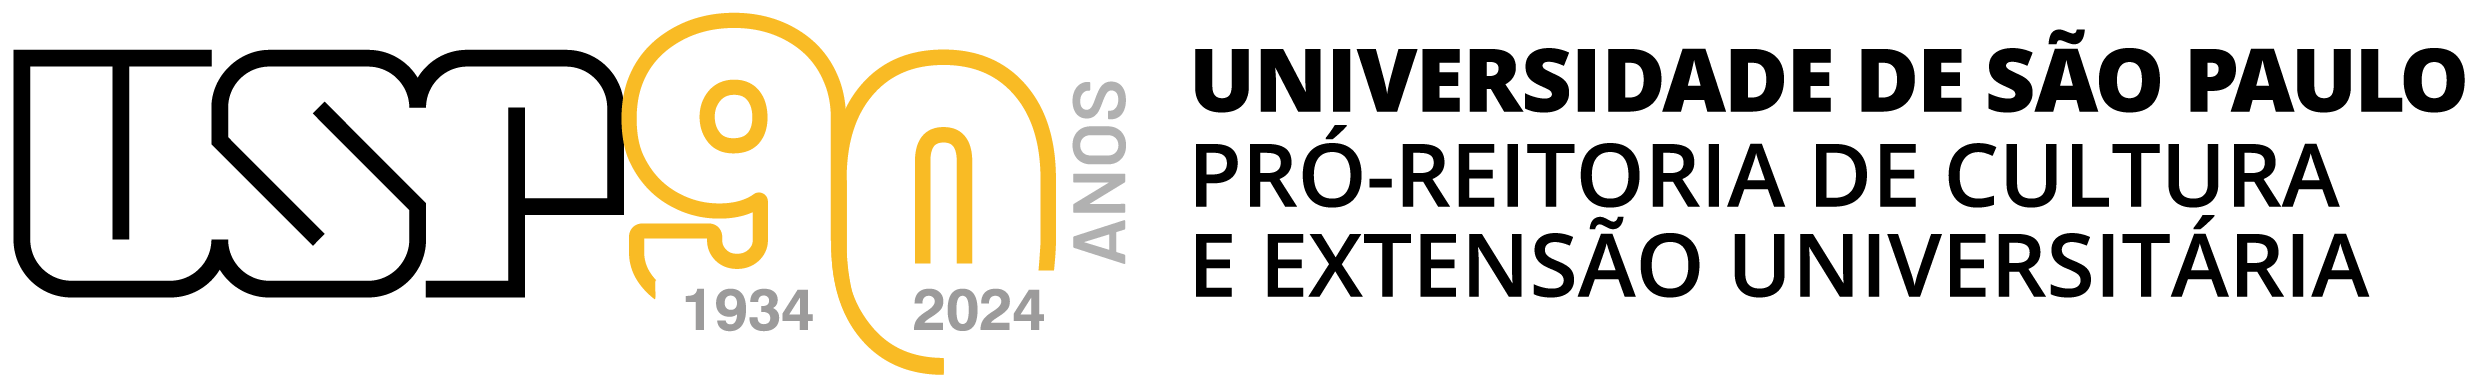 Marca do Programa USP e as Profissões